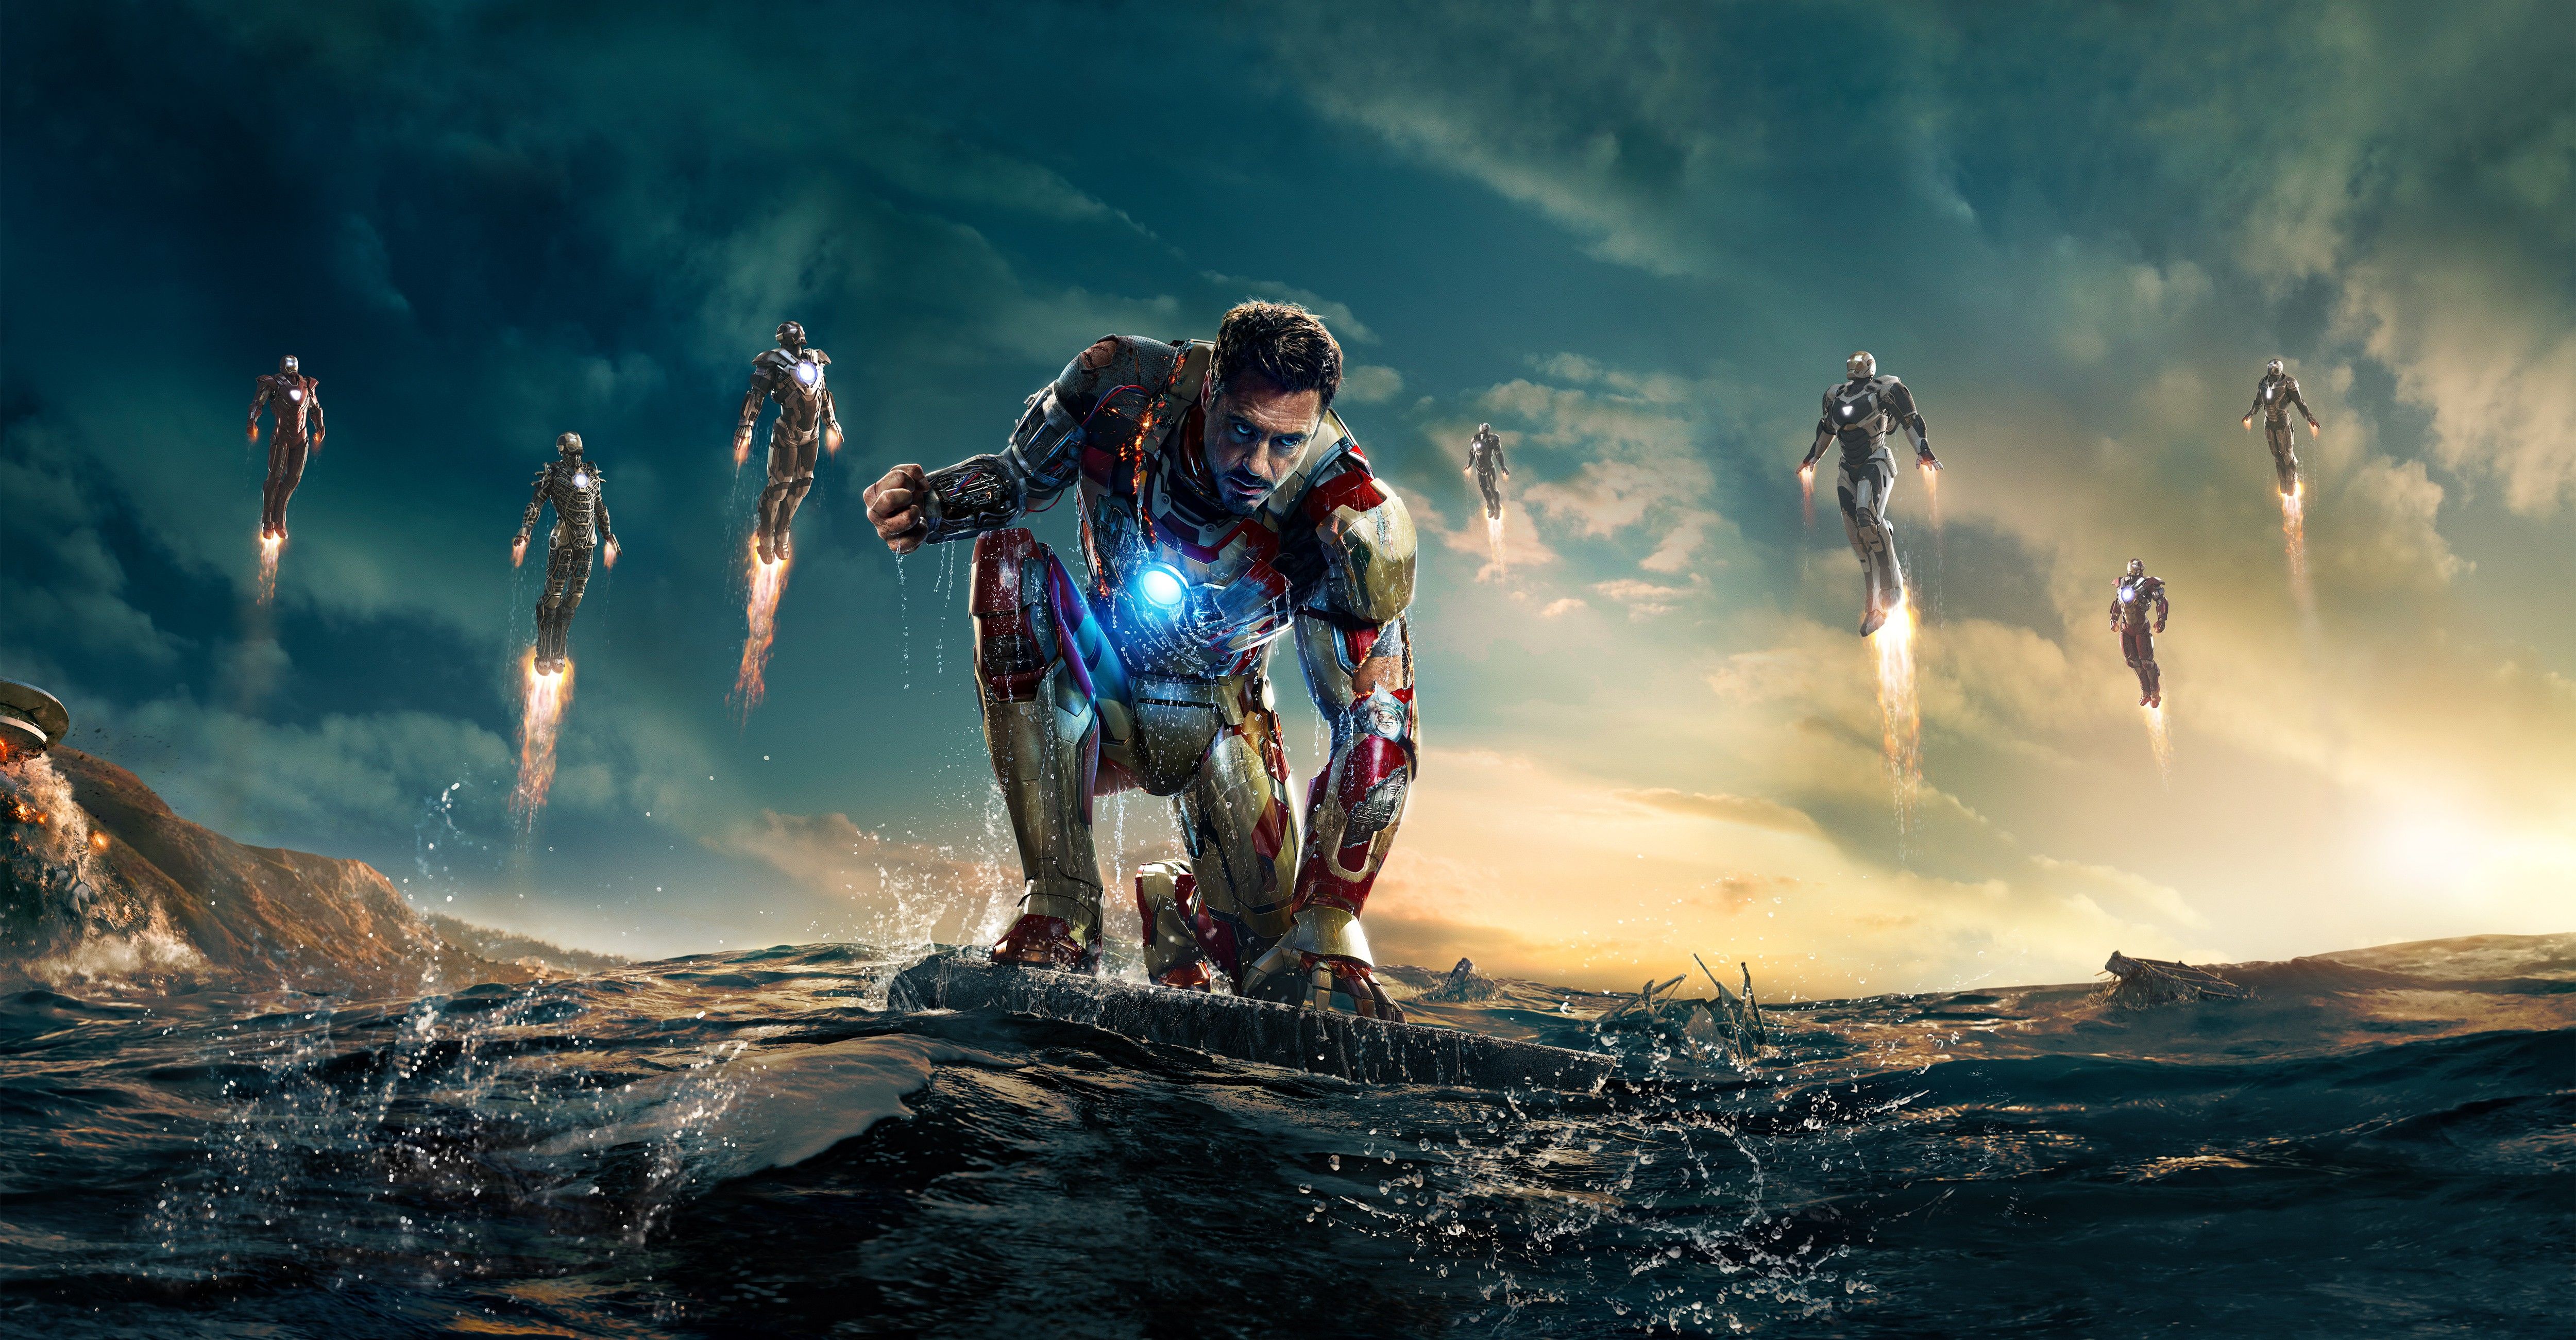 K 3 new. Железный человек 3. Тони Старк. «Железный человек 3» (Iron man 3, 2013).